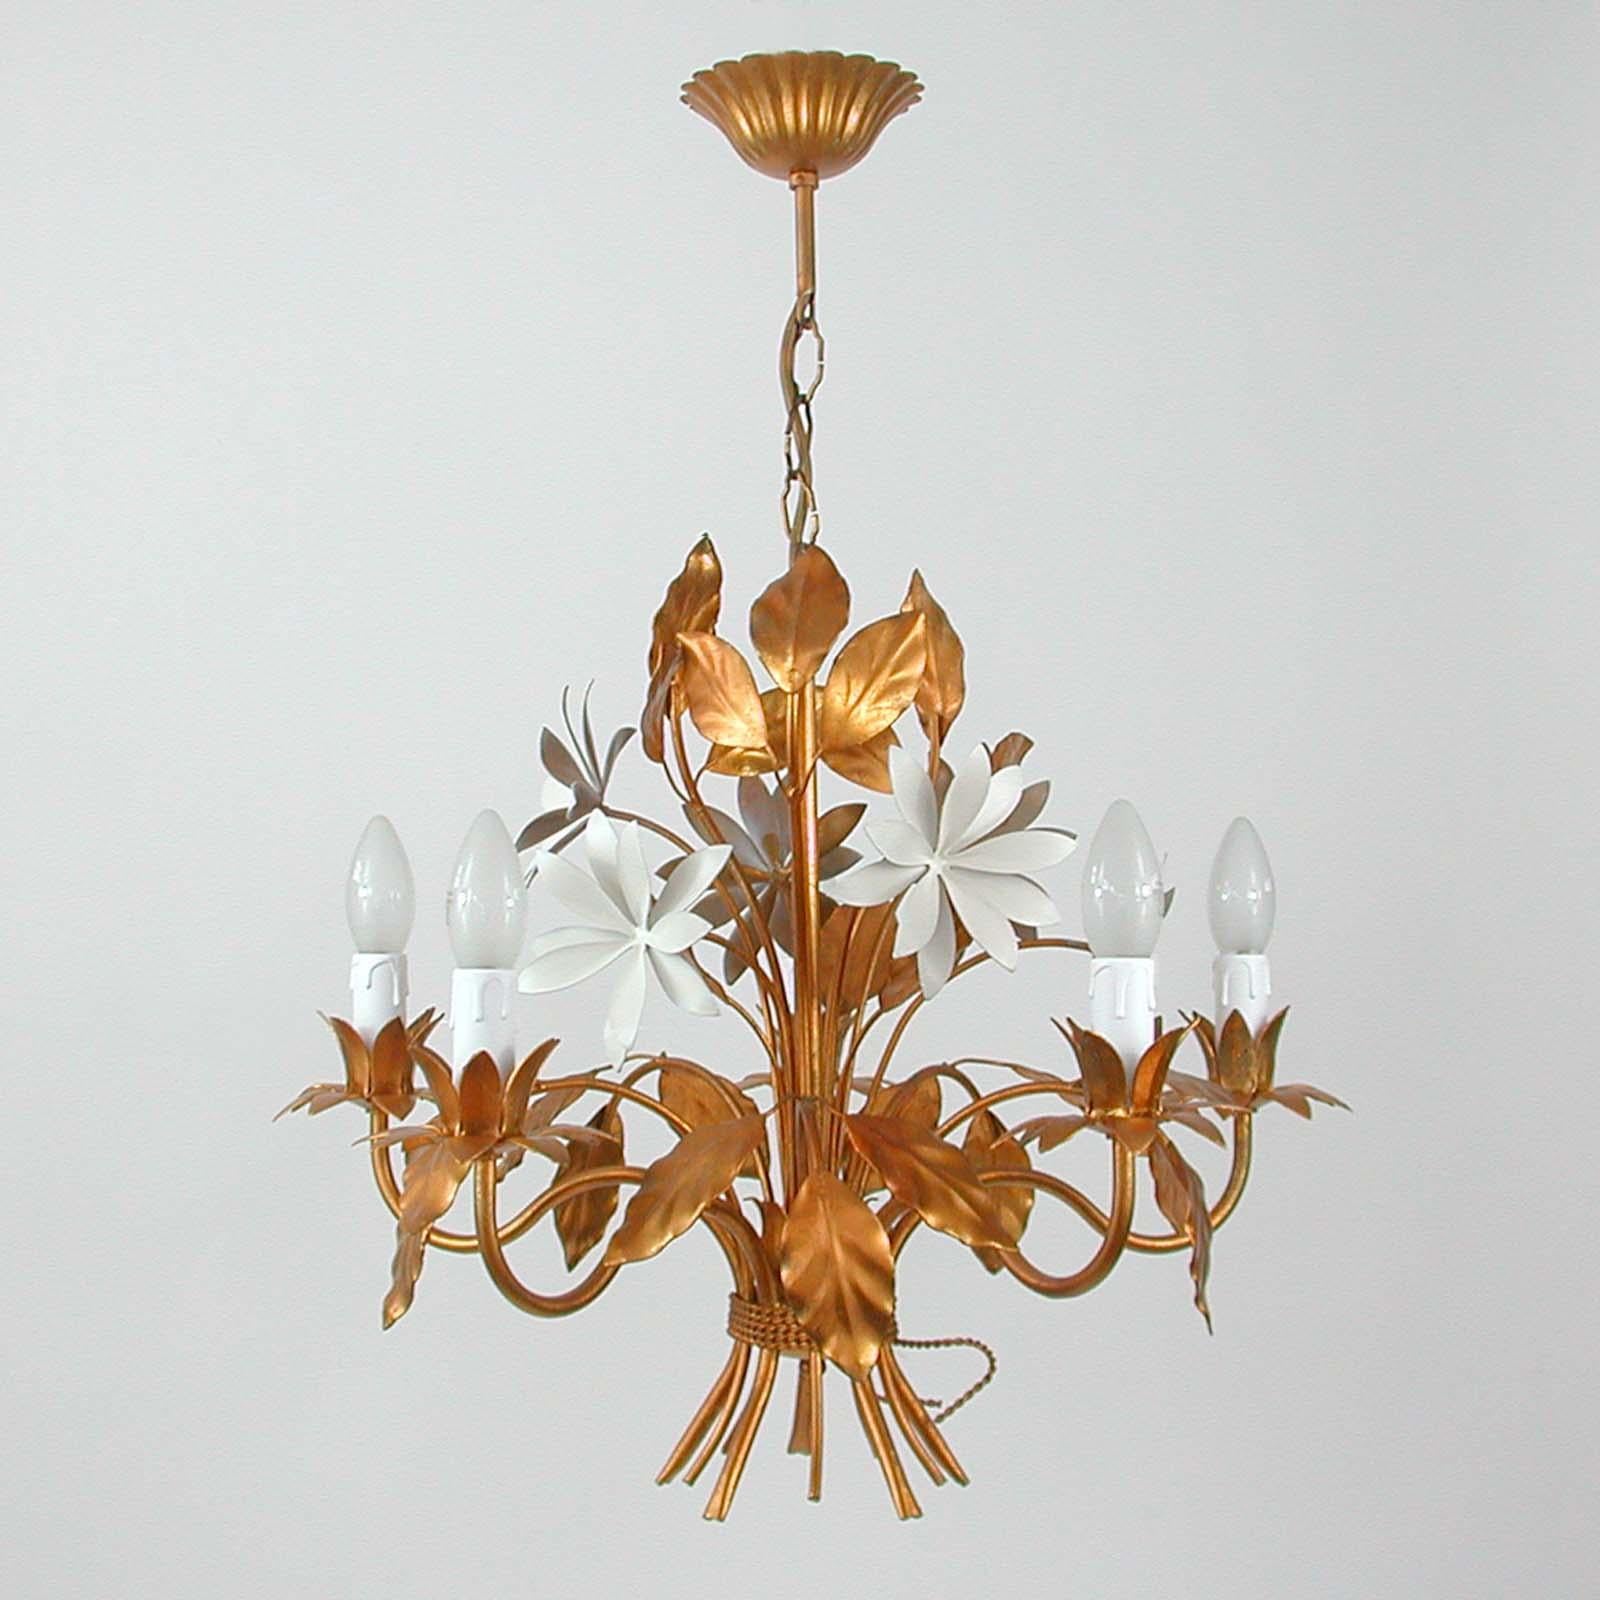 Ce magnifique lustre doré a été conçu et fabriqué en Allemagne dans les années 1970 par Hans Kögl Leuchten. Il comporte 5 lumières et est fait de métal plaqué or antique et de fleurs laquées blanc cassé. 

Les dessins de Kögls s'inspirent de